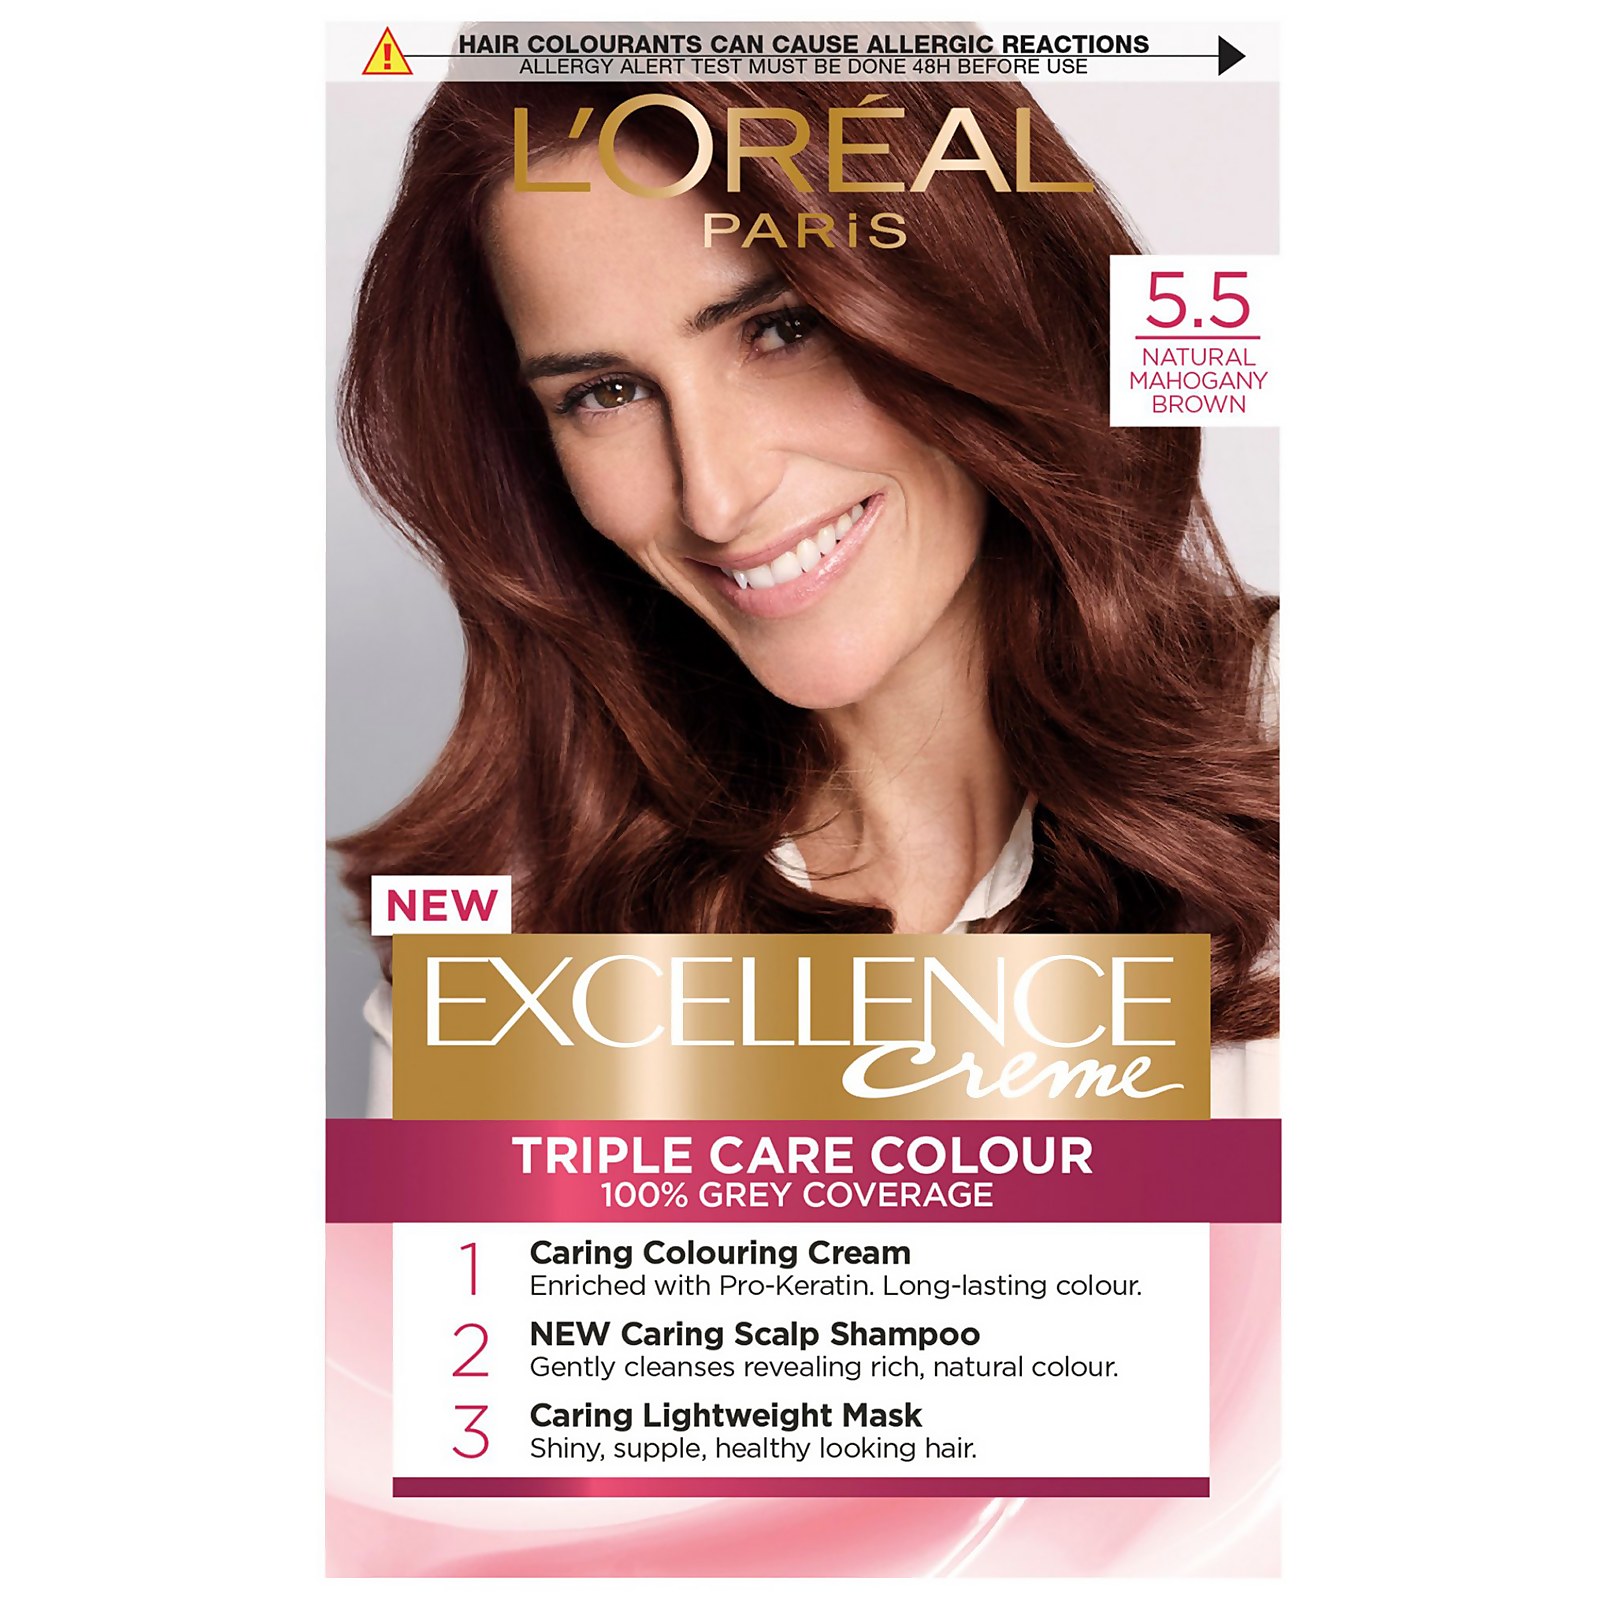 L'Oreal Paris Excellence Creme Permanent Hair Dye (Various Shades) - 5.5 Natural Mahogany Brown